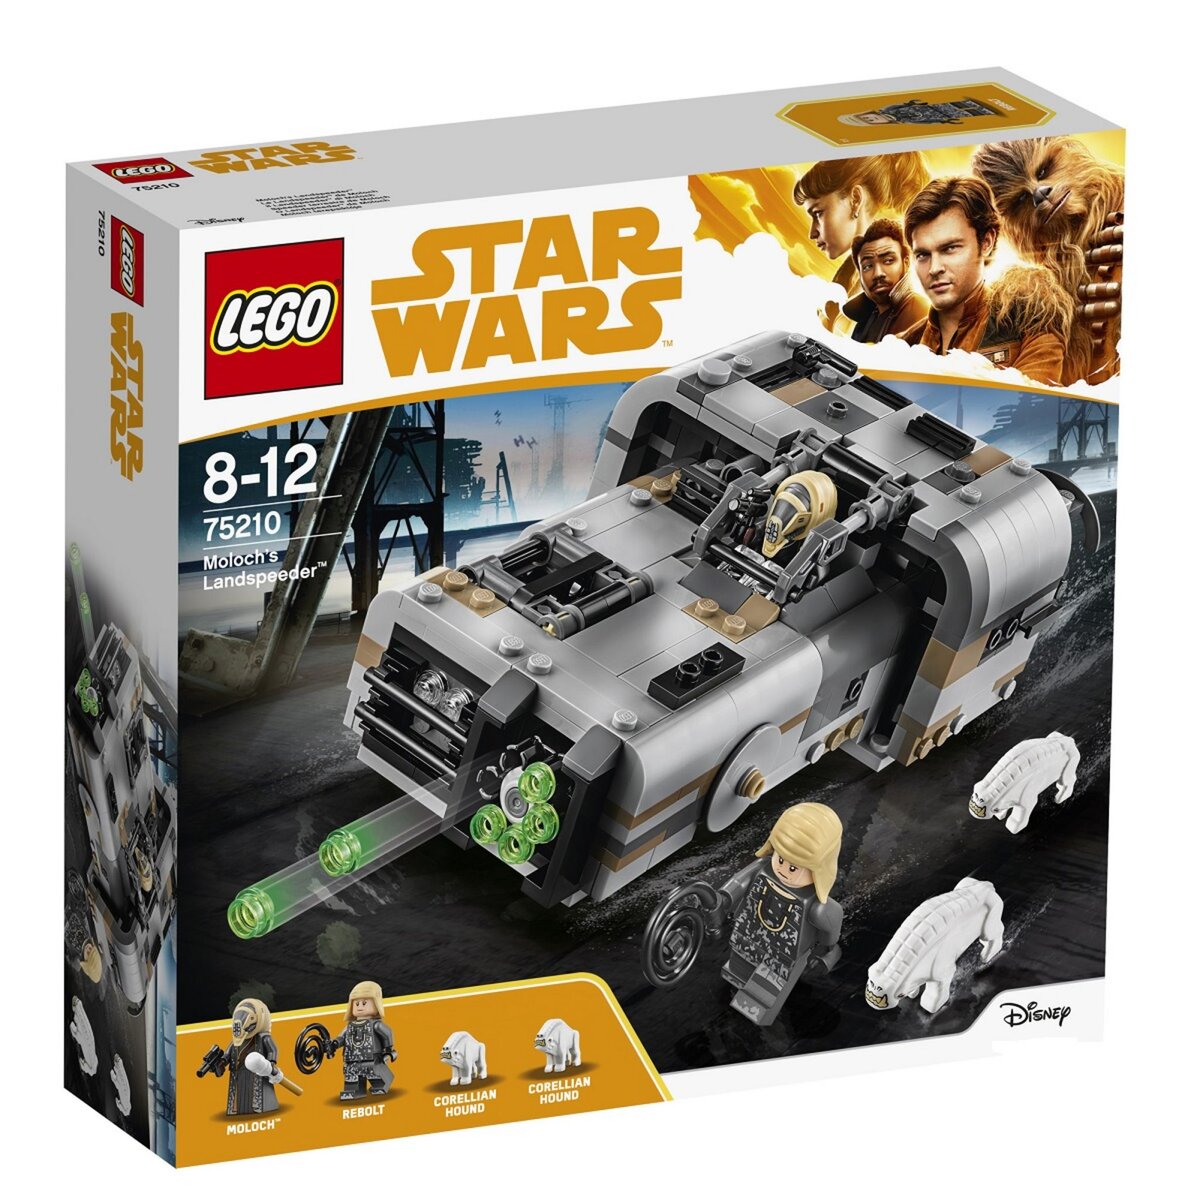 LEGO Star Wars 75210 - Le Landspeeder de Moloch 